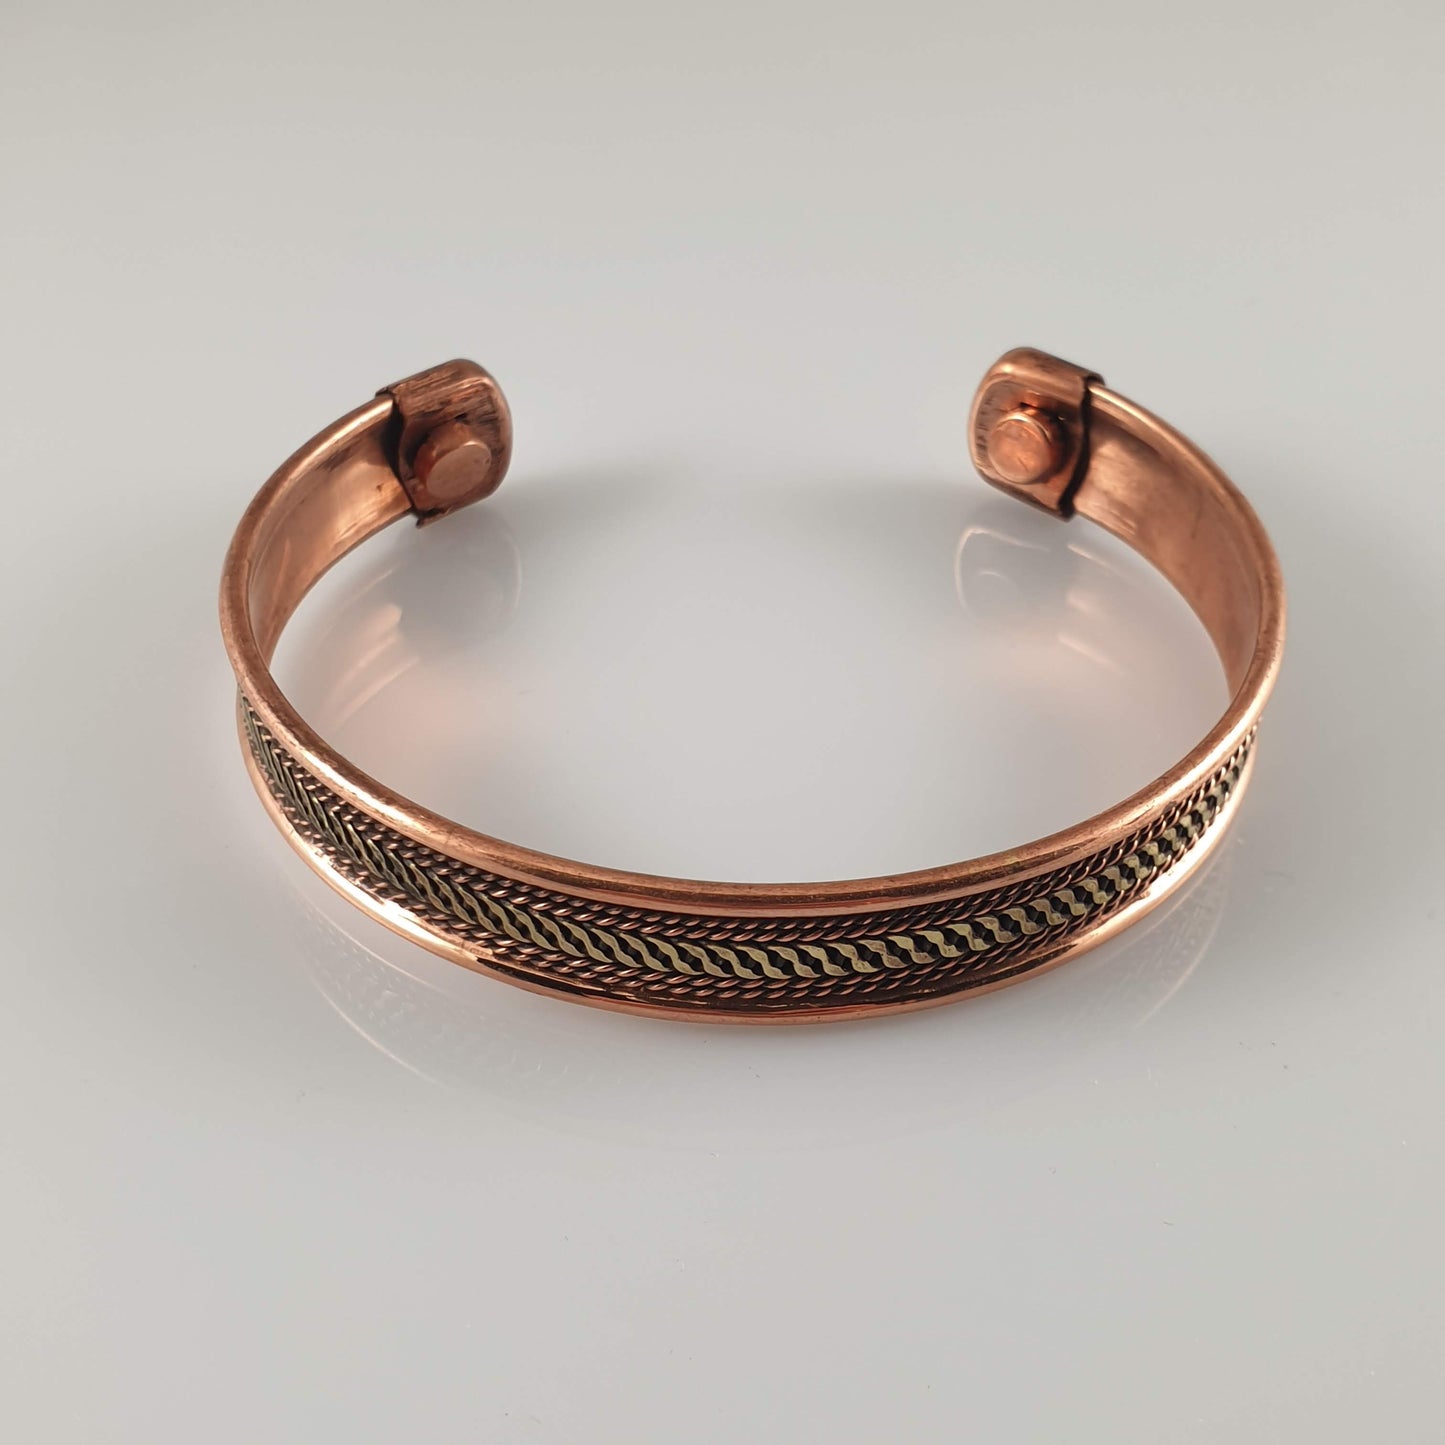 Golden Stripes Copper Magnetic Bracelet - Rivendell Shop